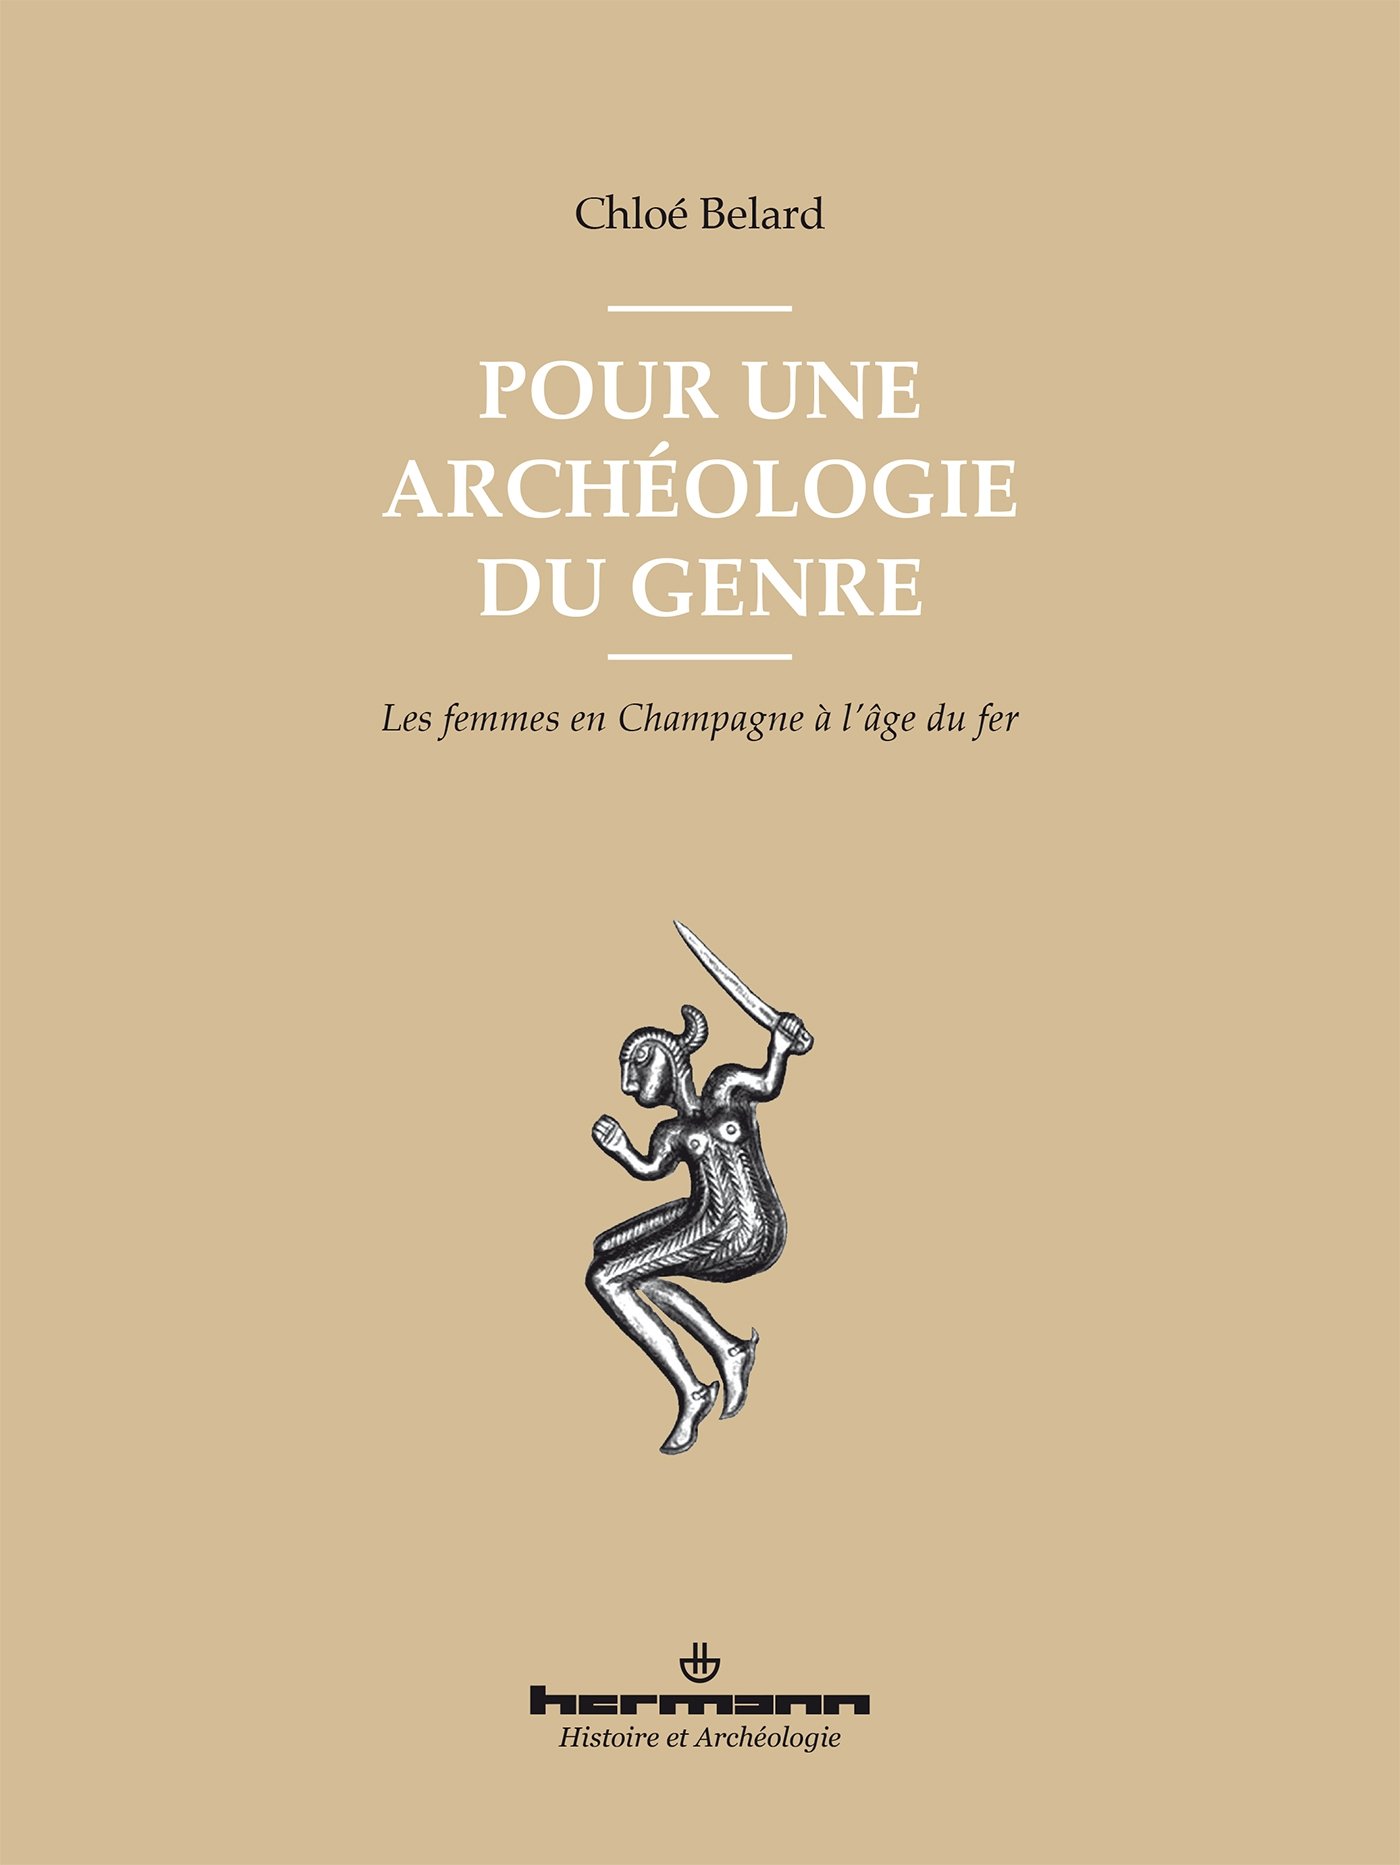 Pour une archéologie du genre. Les femmes en Champagne à l'âge du fer, 2017, 272 p., 88 ill.